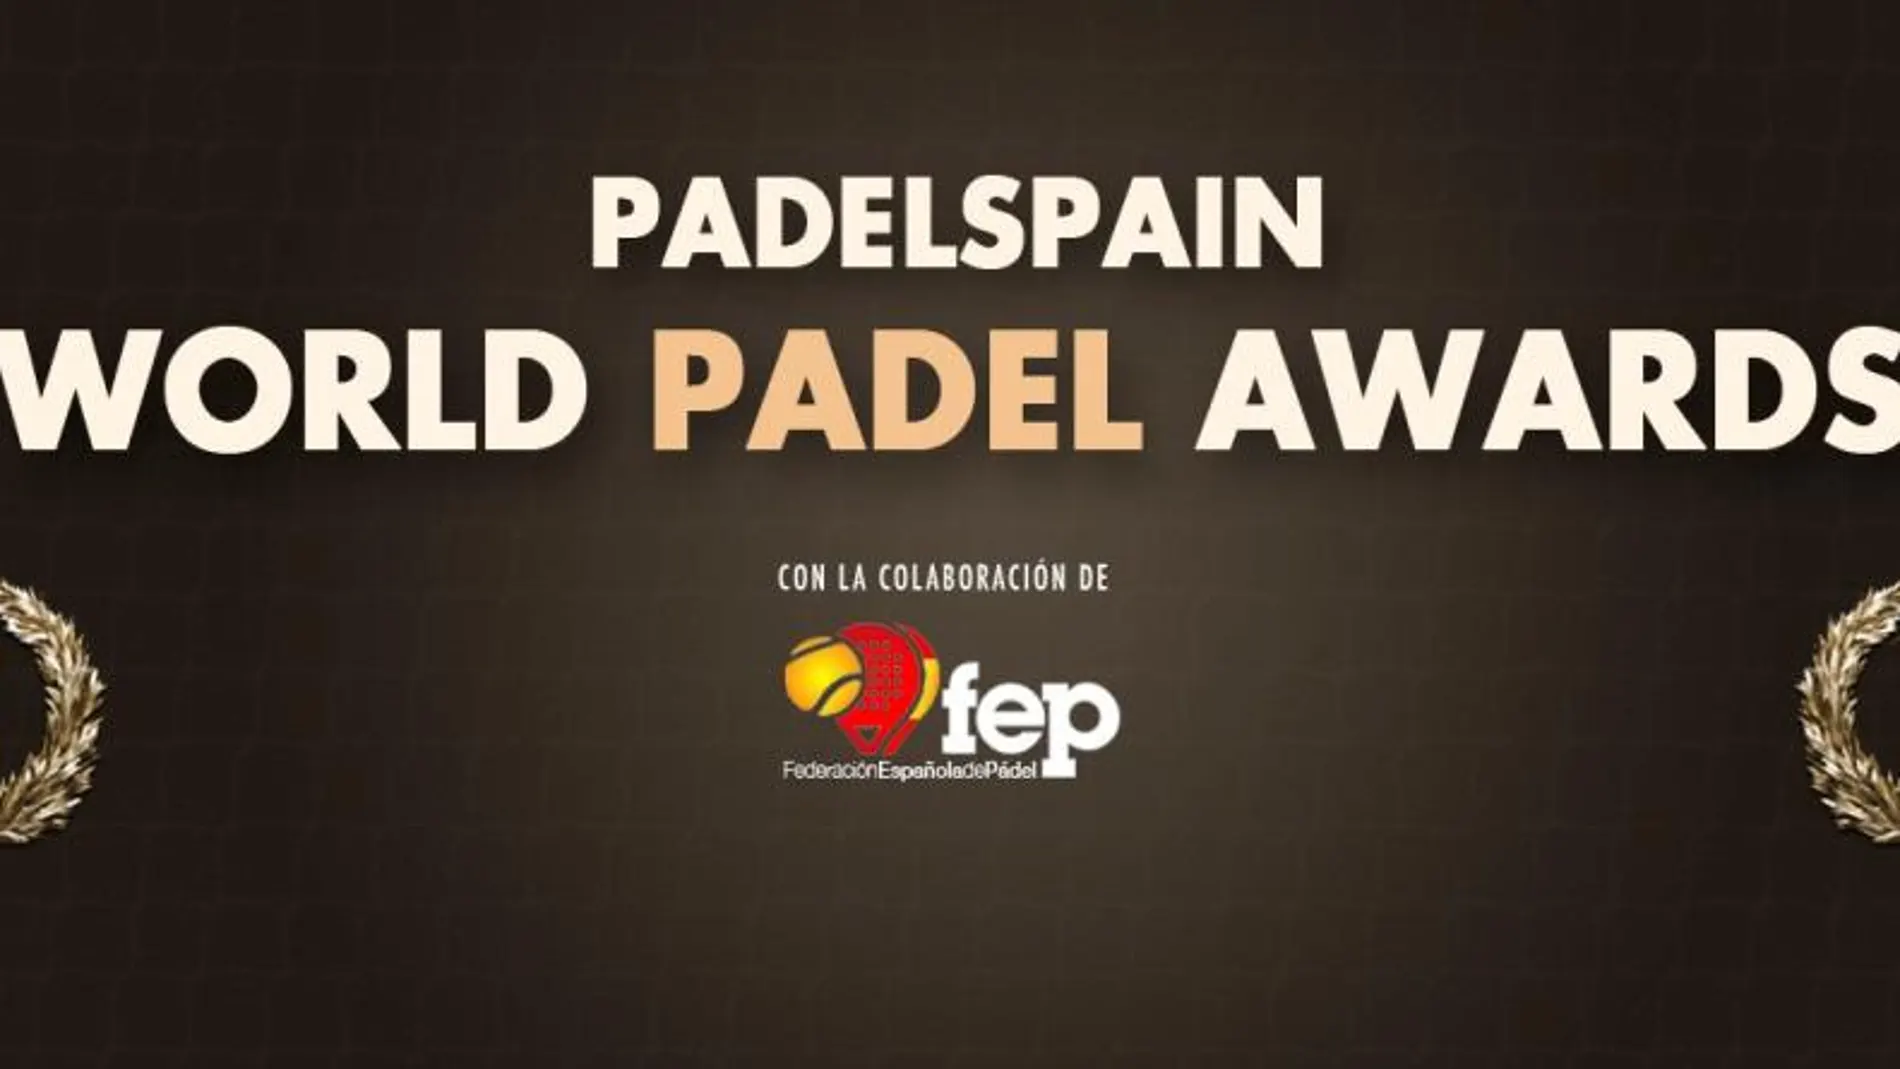 PadelSpain World Padel Awards